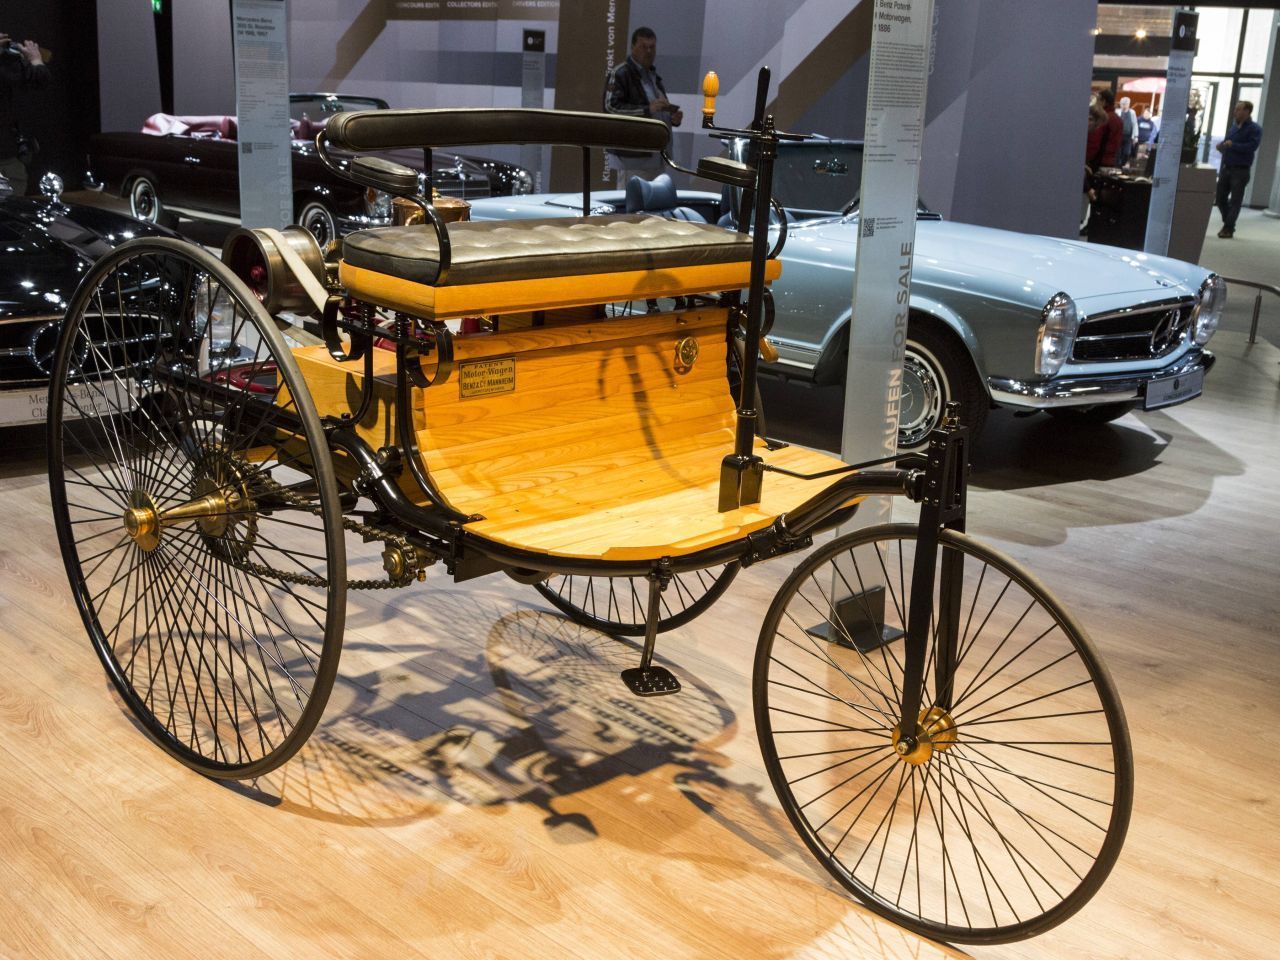 Das erste Auto der Welt, der Benz Motorwagen Nummer 1, hatte nur drei Räder, aber einen Verbrennungsmotor. 